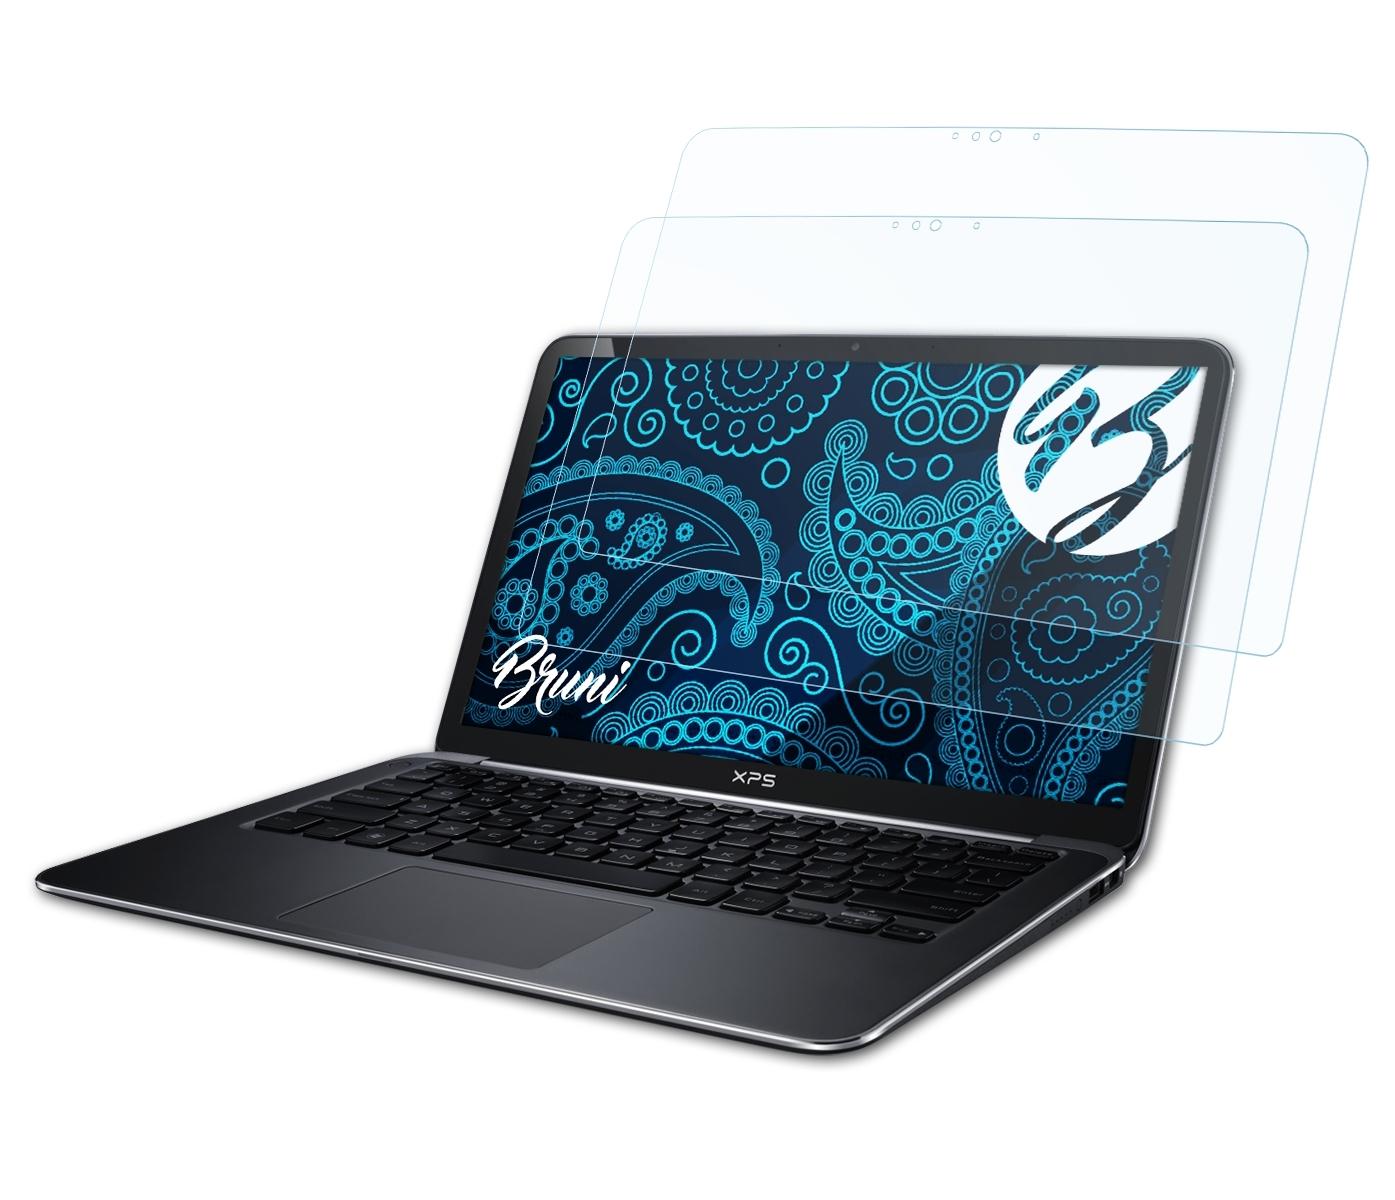 (9333, Version 13 2014)) XPS Schutzfolie(für Dell Basics-Clear 2x BRUNI Ultrabook